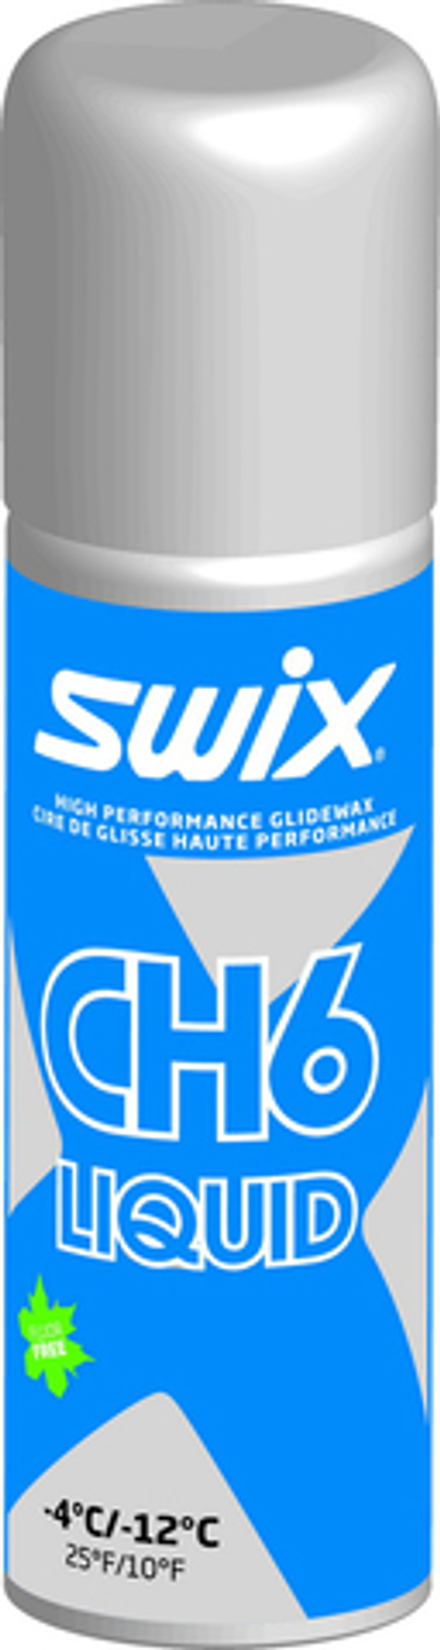 Жидкий парафин SWIX CH6XLiq, (-4-12 С), Blue, 125 ml